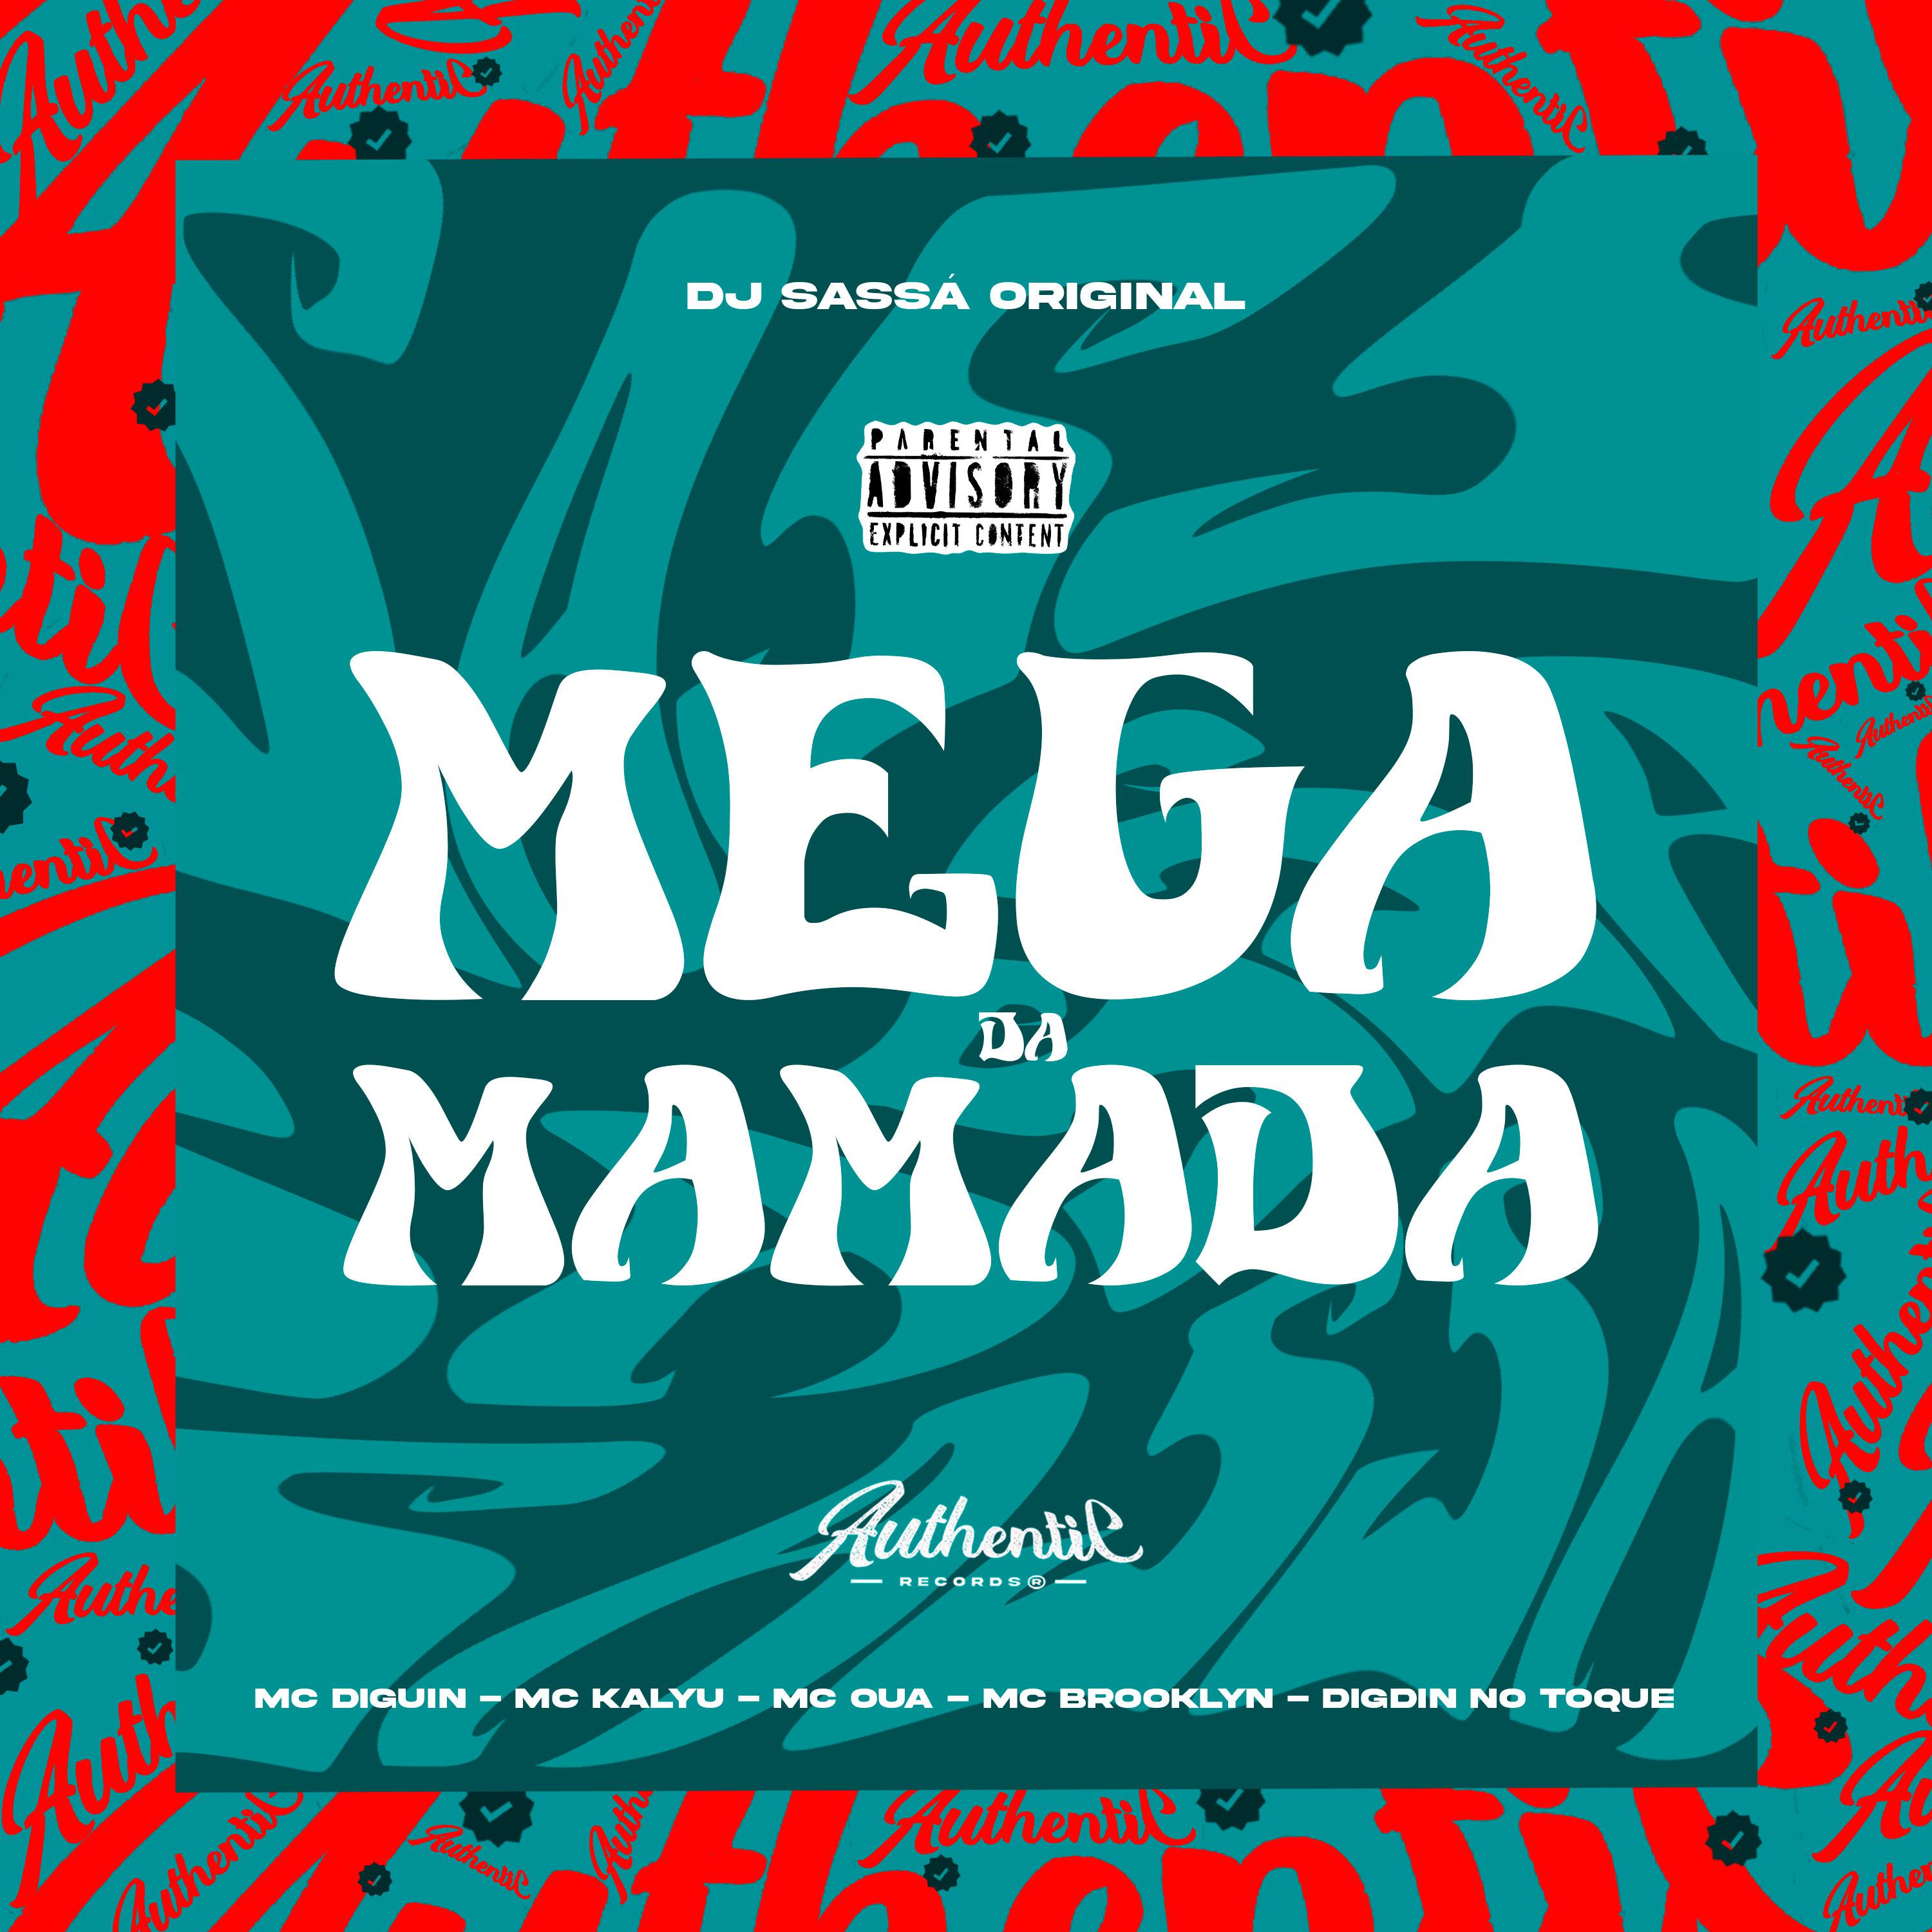 DJ Sassá Original - Mega da Mamada